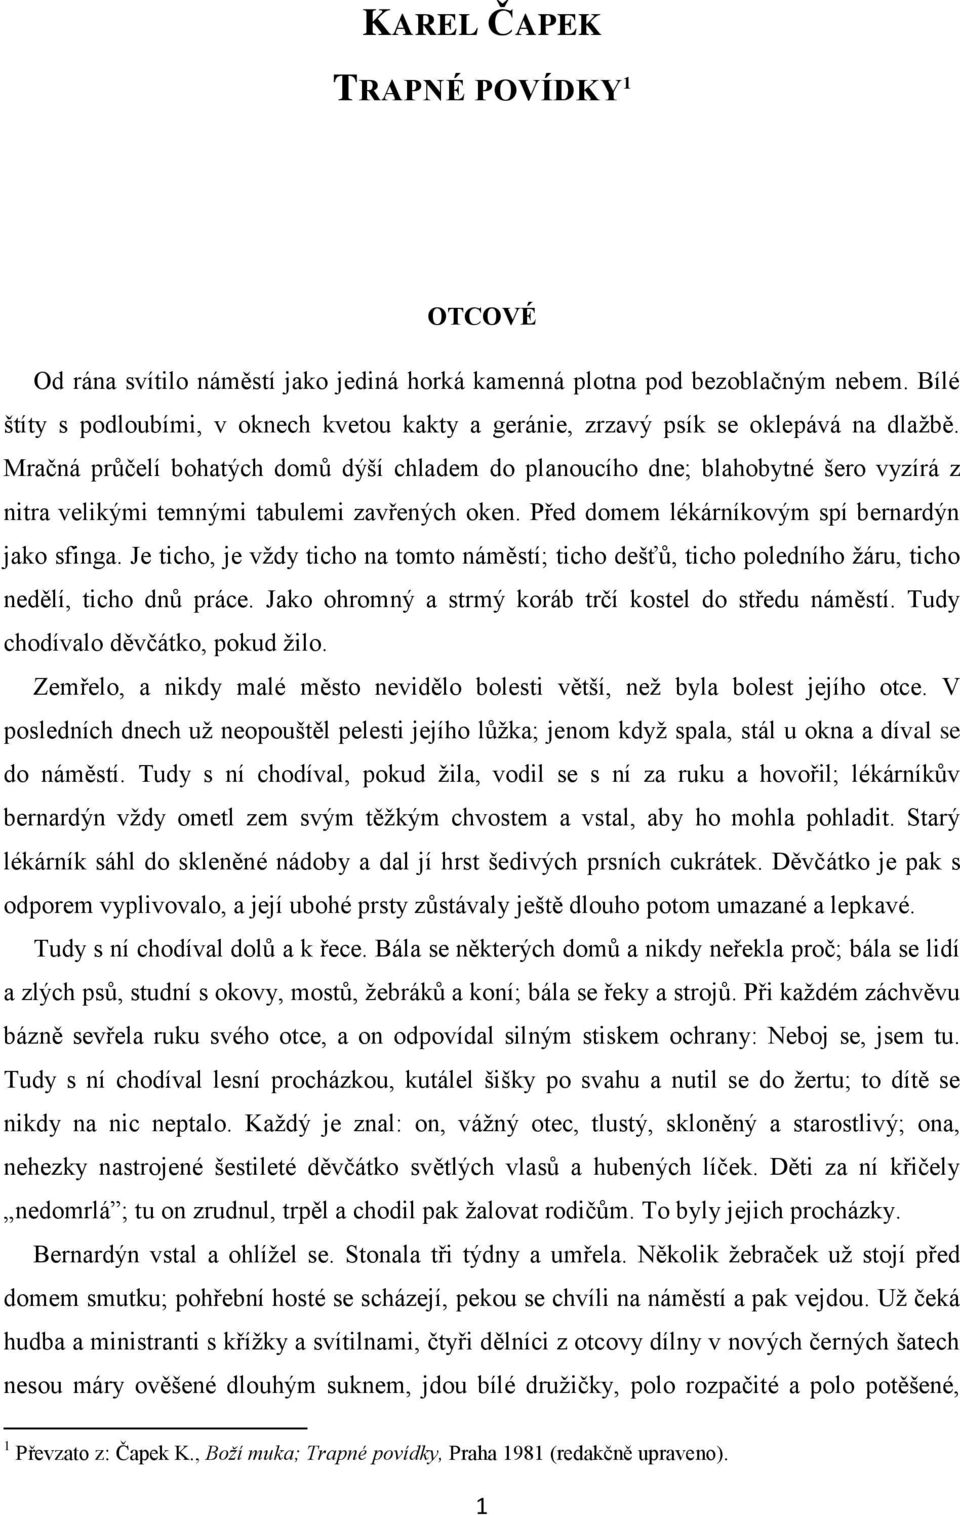 KAREL ČAPEK TRAPNÉ POVÍDKY 1 - PDF Free Download